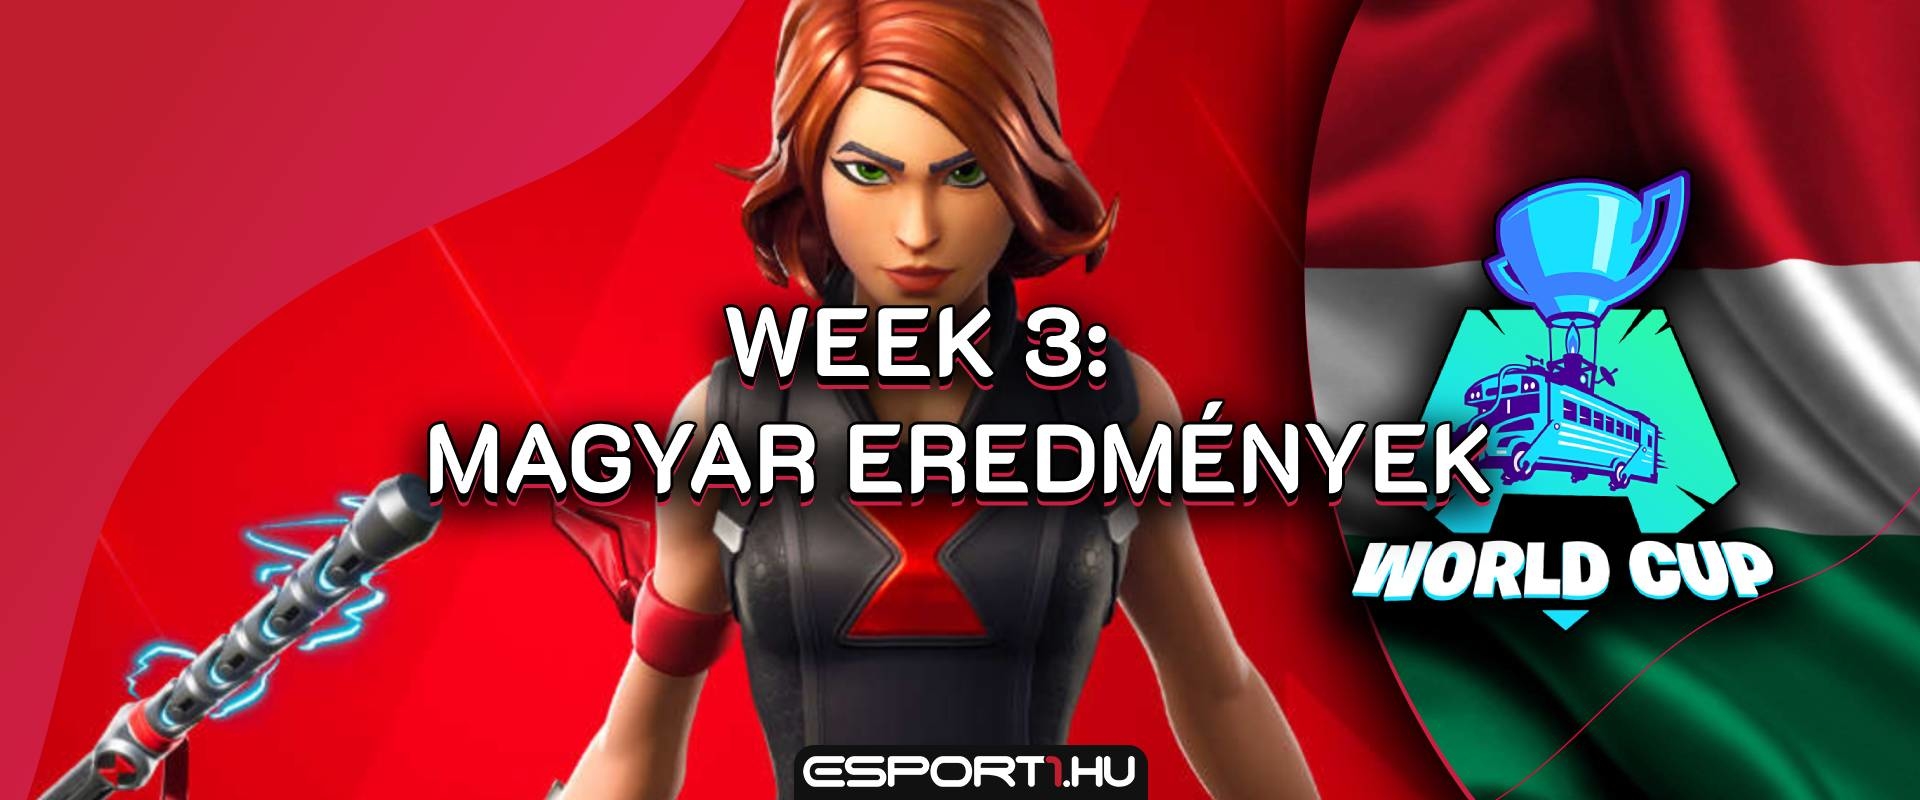 Egy magyar játékos a Fortnite hivatalos streamjén osztotta a fejeseket - Week 3 eredmények